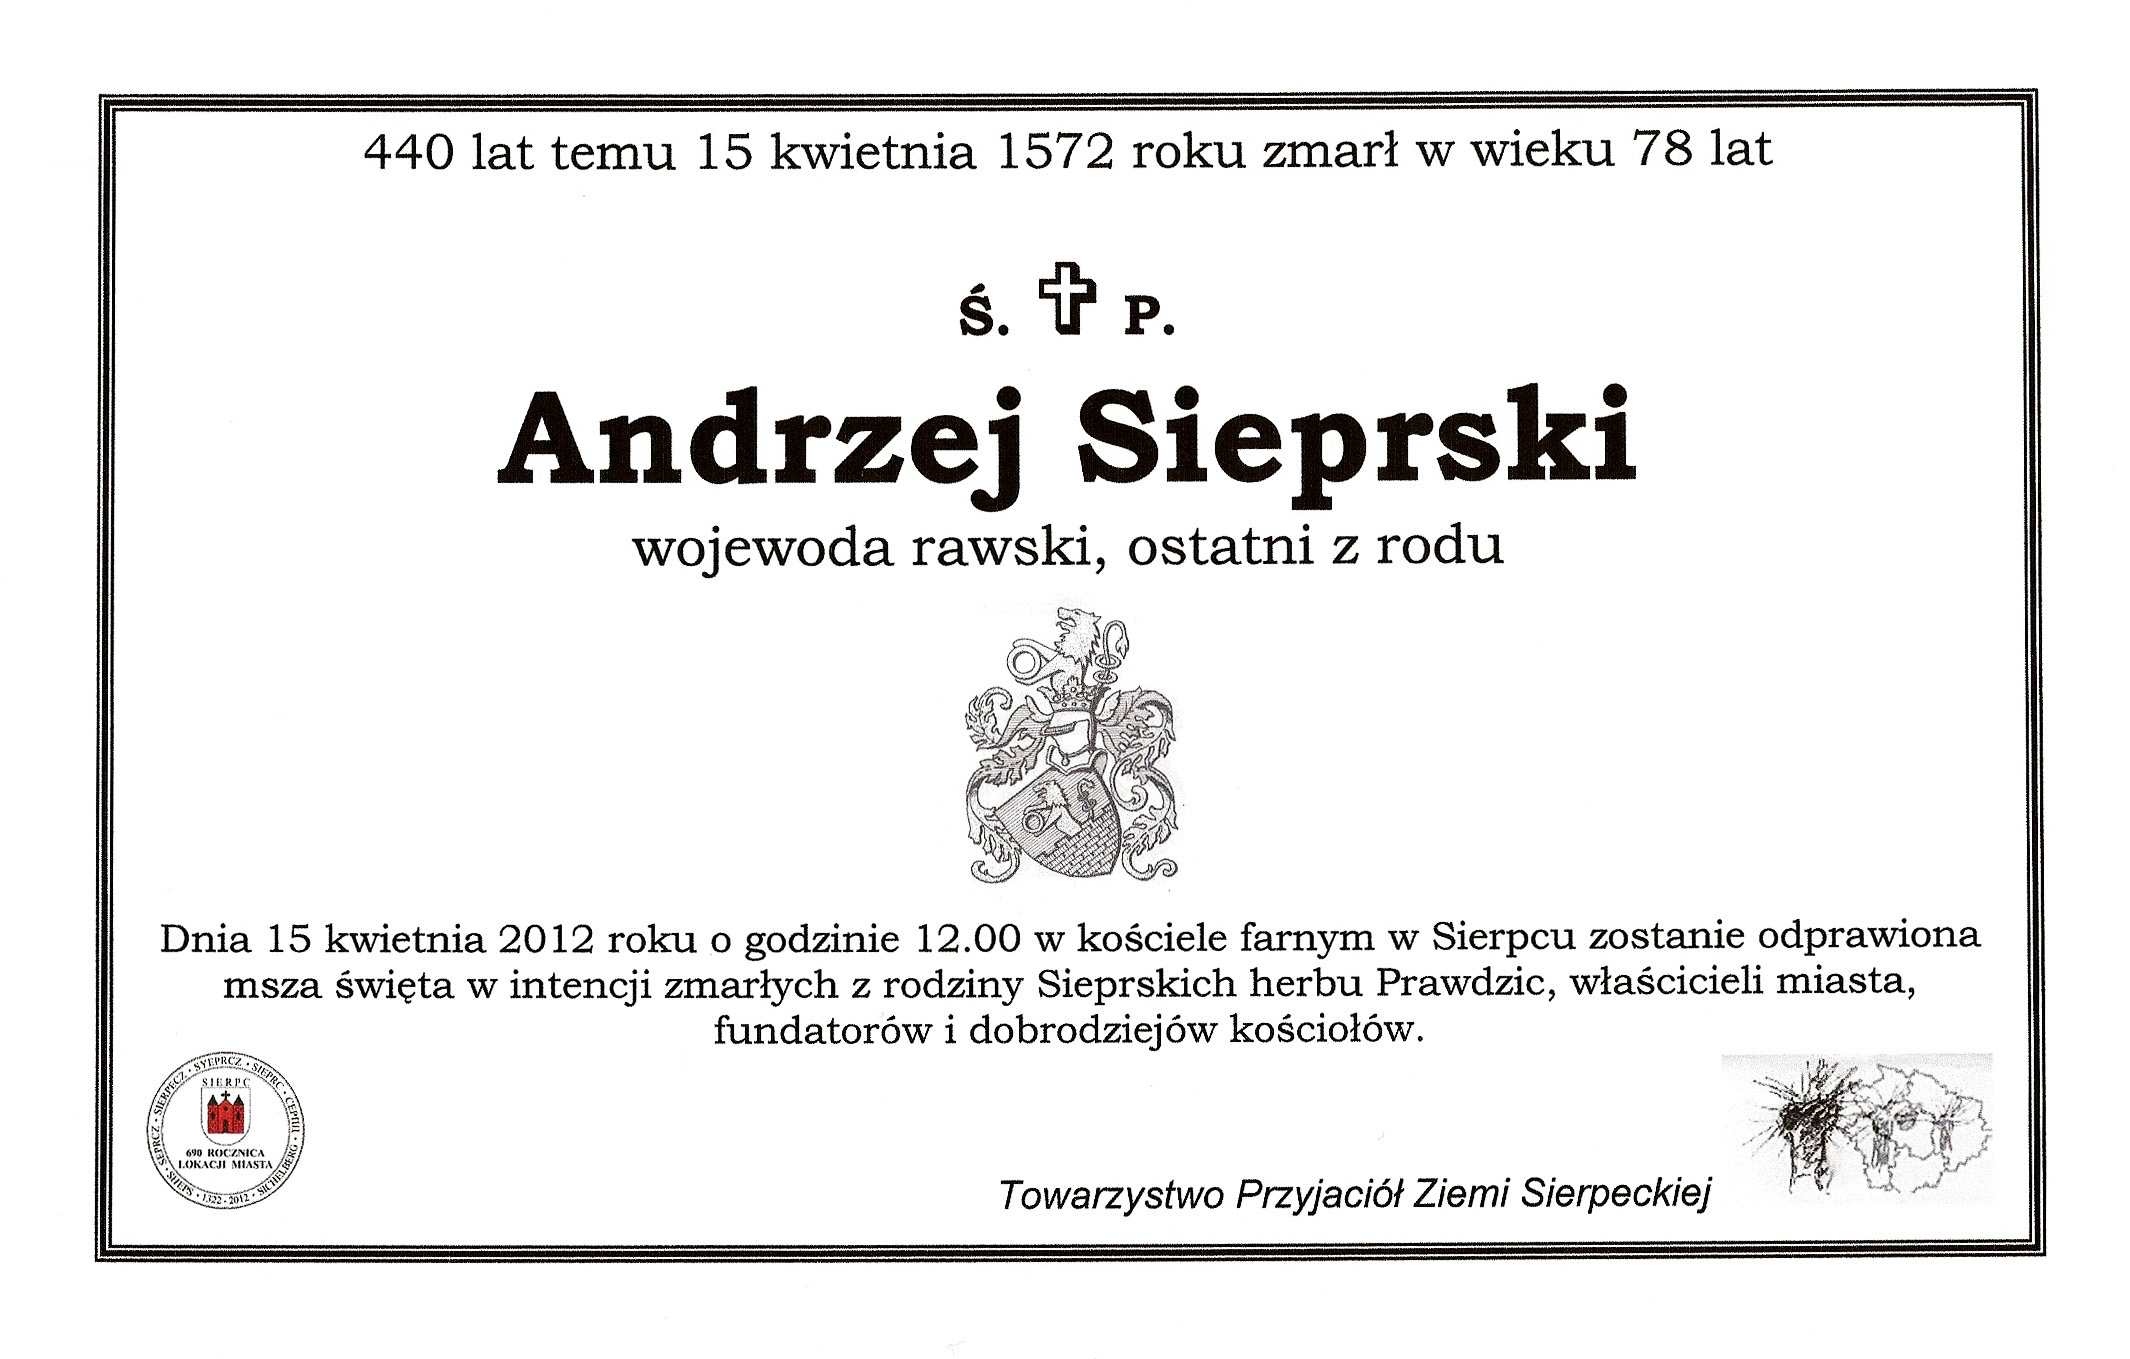 Zawiadomienie z 2012 roku informujące o mszy za Andrzeja Sieprskiego